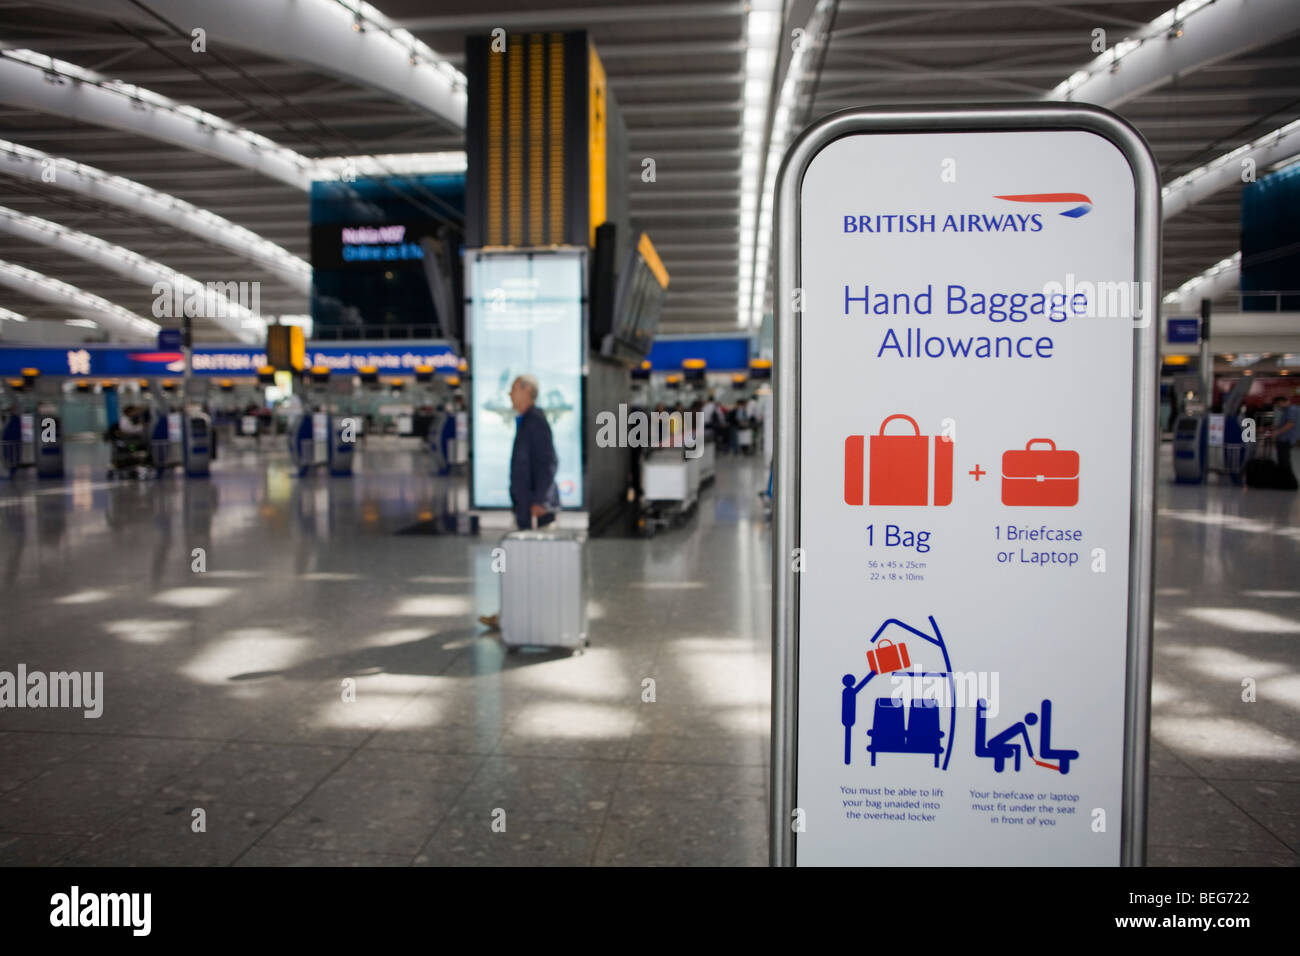 British Airways' Equipaje de mano permitido firmar ayudando a los pasajeros el check-in en la Terminal 5 del aeropuerto de Heathrow Fotografía de stock